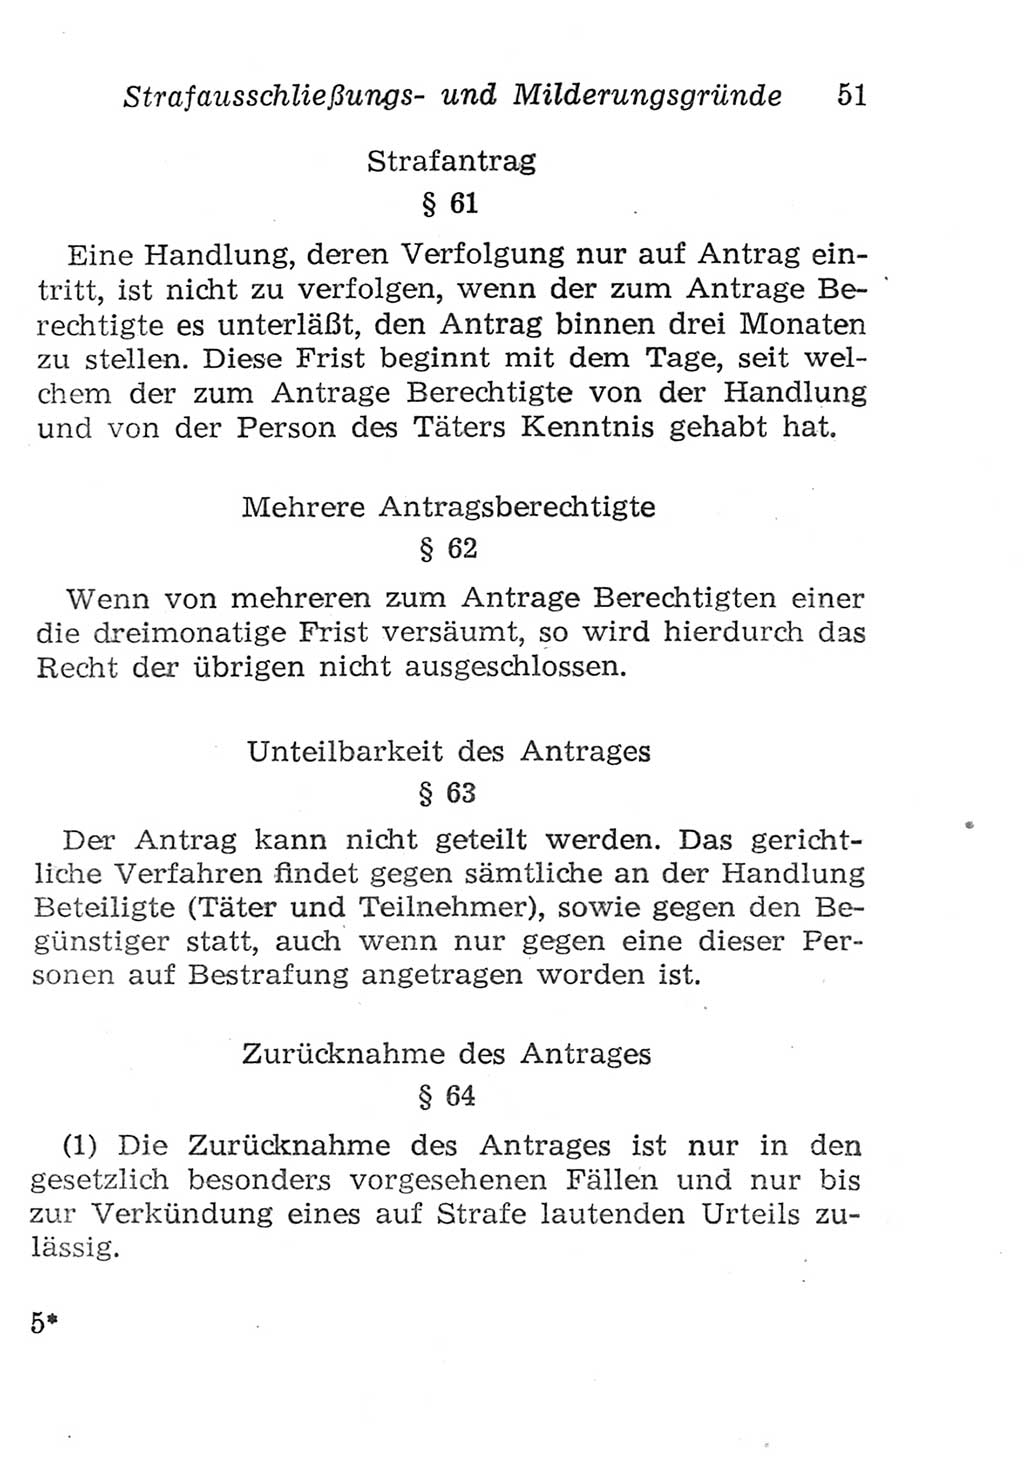 Strafgesetzbuch (StGB) und andere Strafgesetze [Deutsche Demokratische Republik (DDR)] 1957, Seite 51 (StGB Strafges. DDR 1957, S. 51)